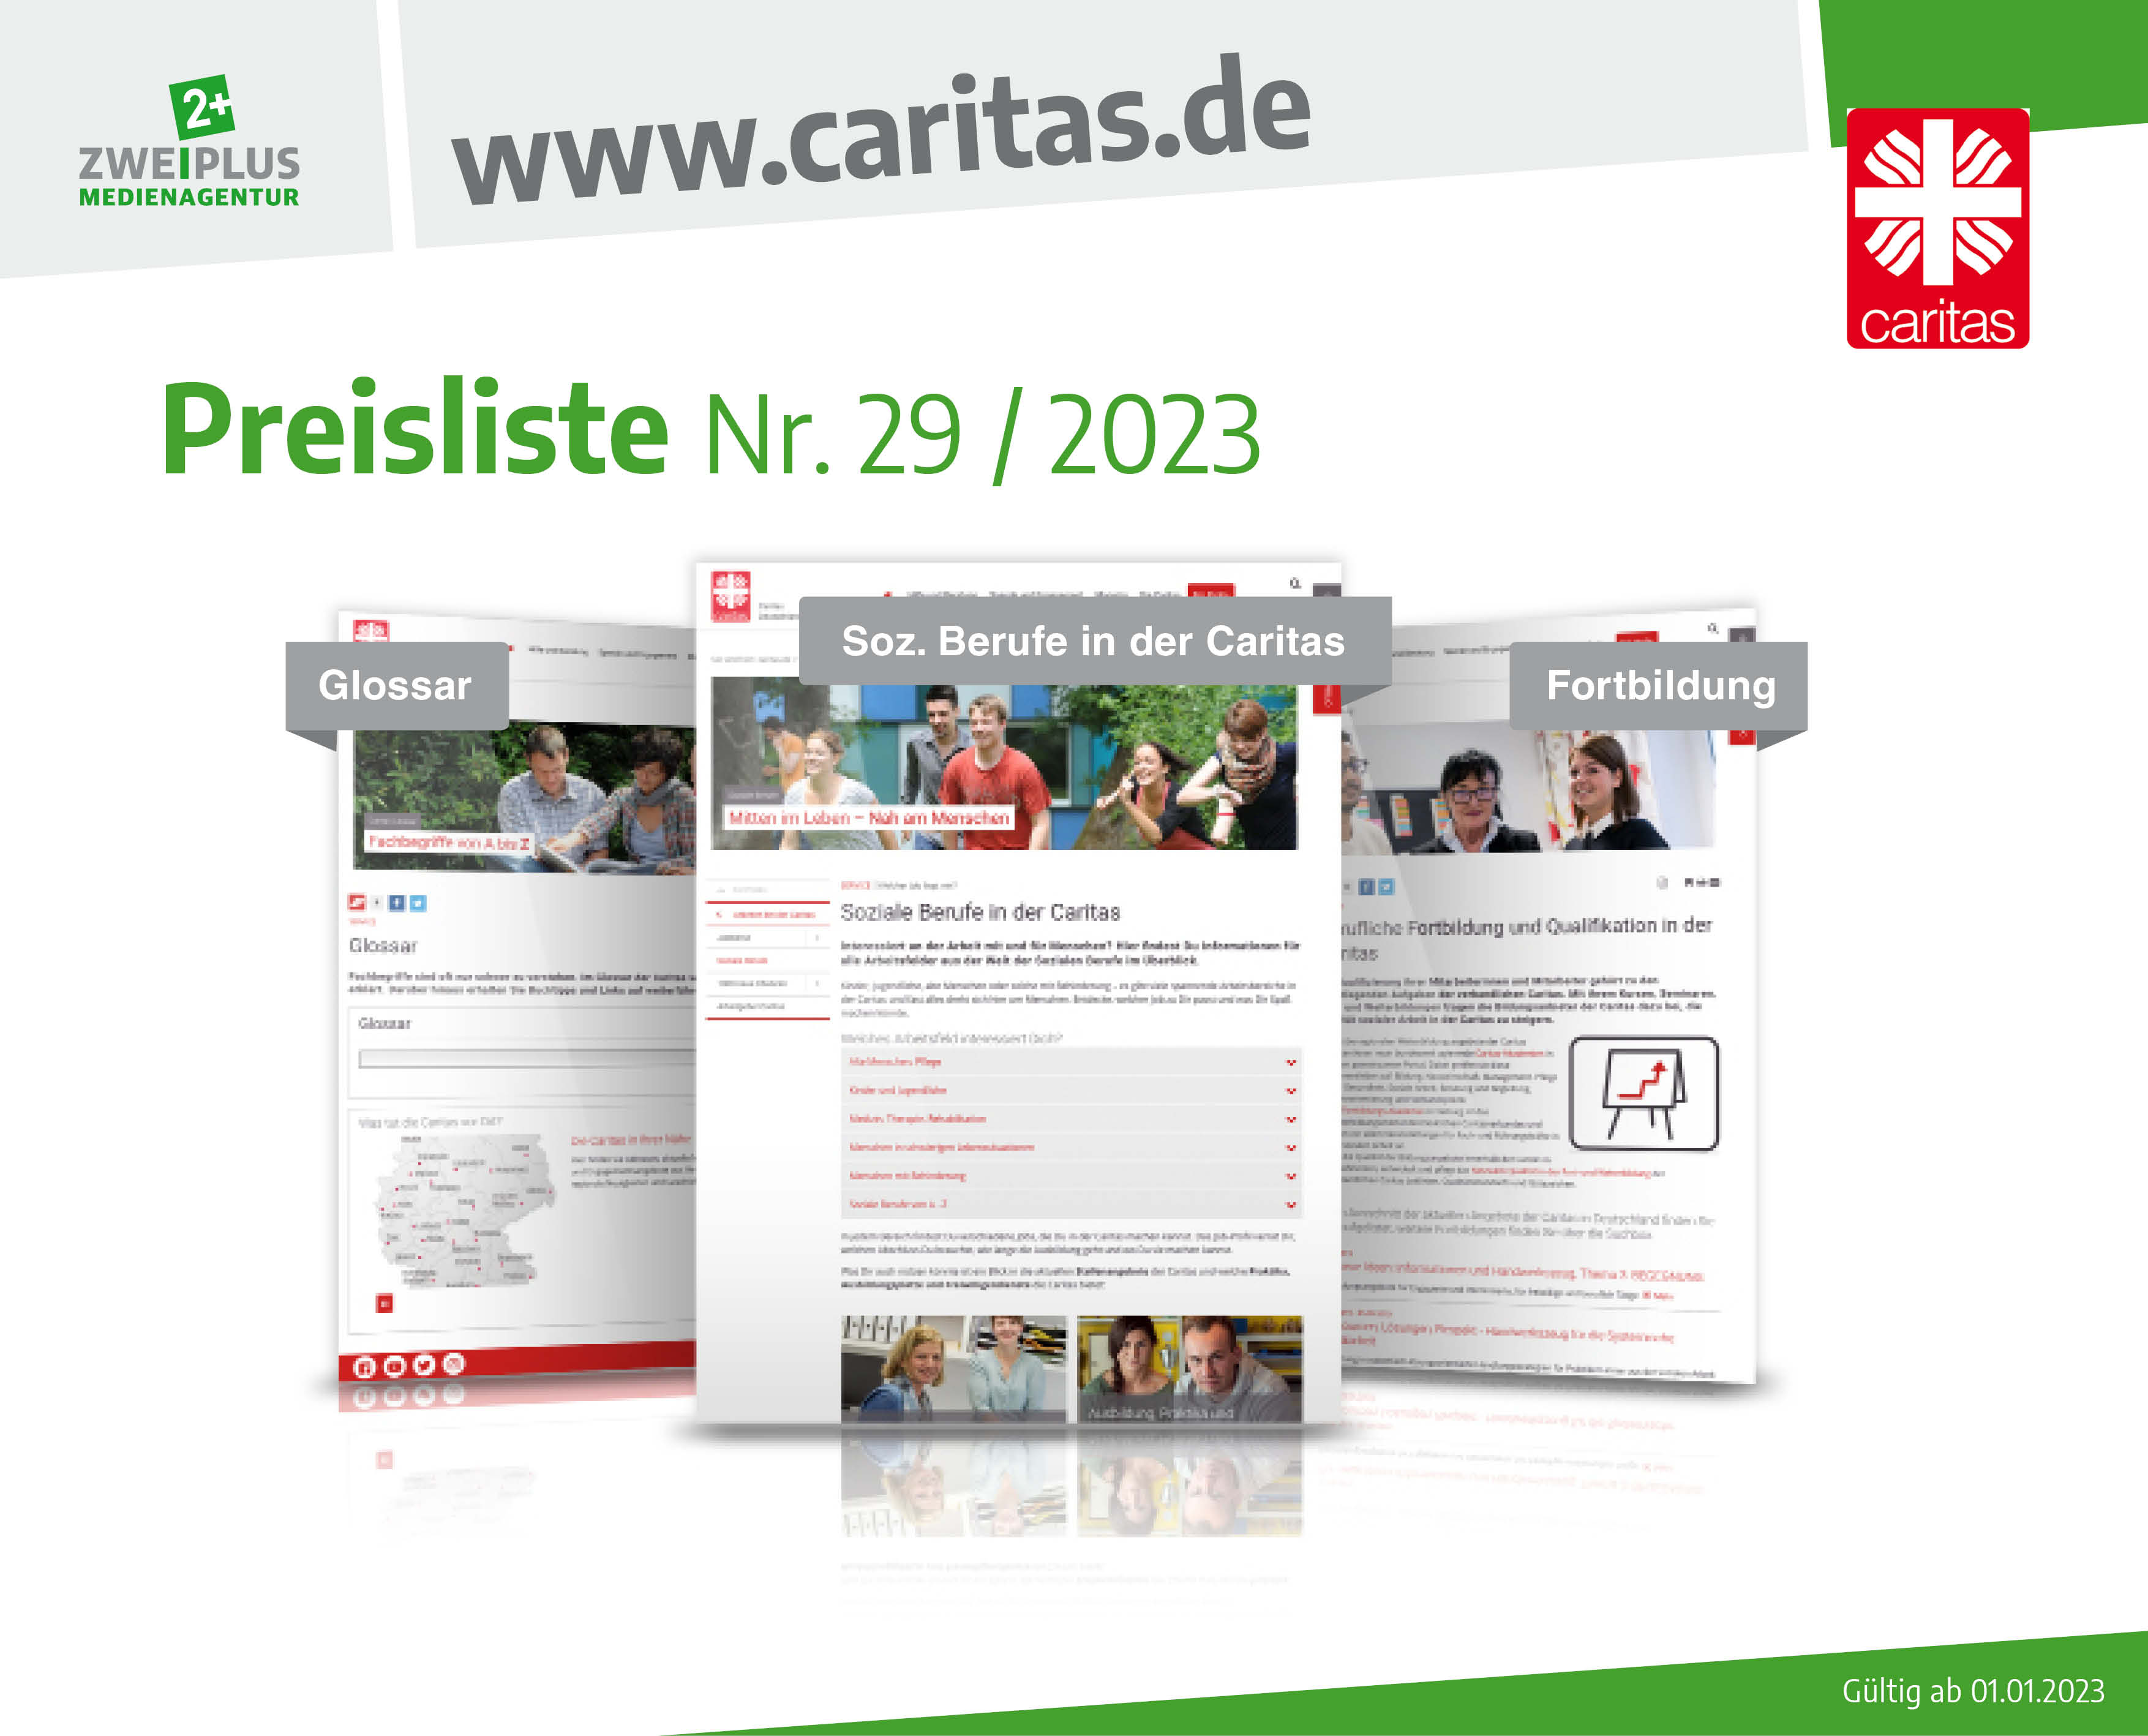 caritas.de, Caritasverband, mediadaten 2023, Zweiplus Medienagentur, neue caritas, Sozialcourage, Welt des Kindes